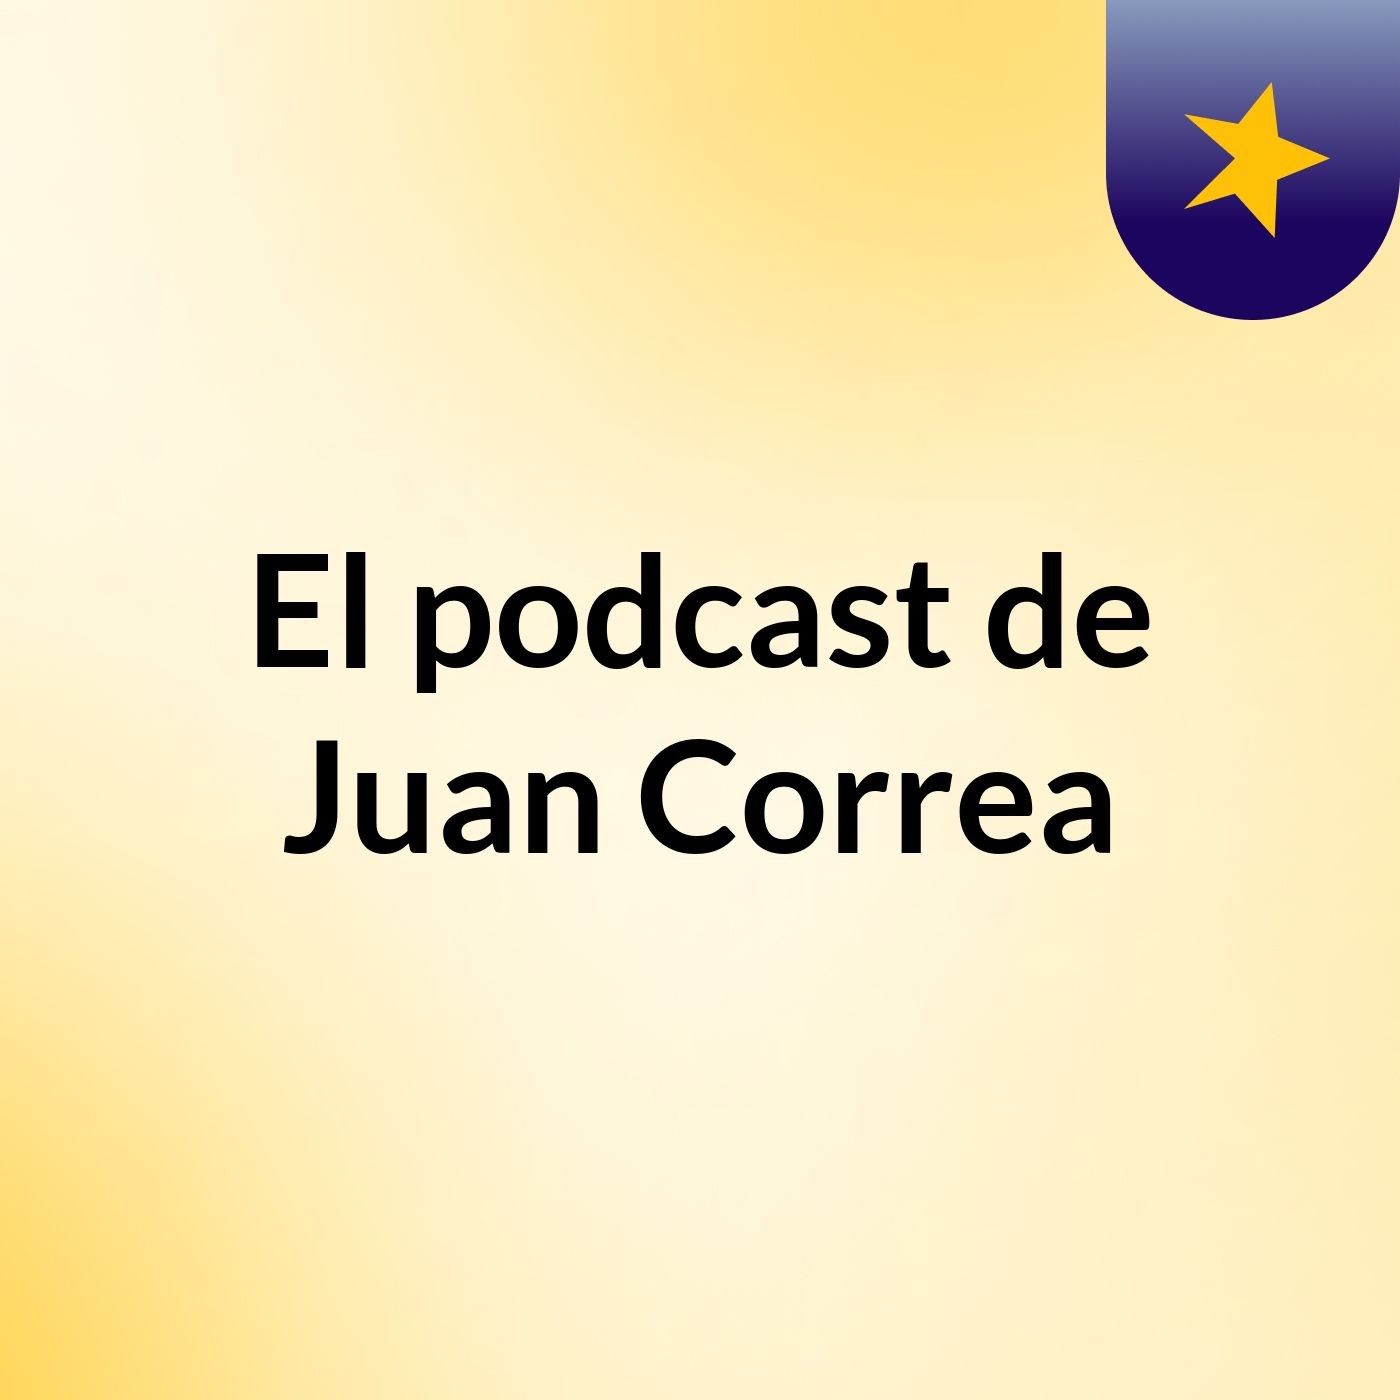 El podcast de Juan Correa